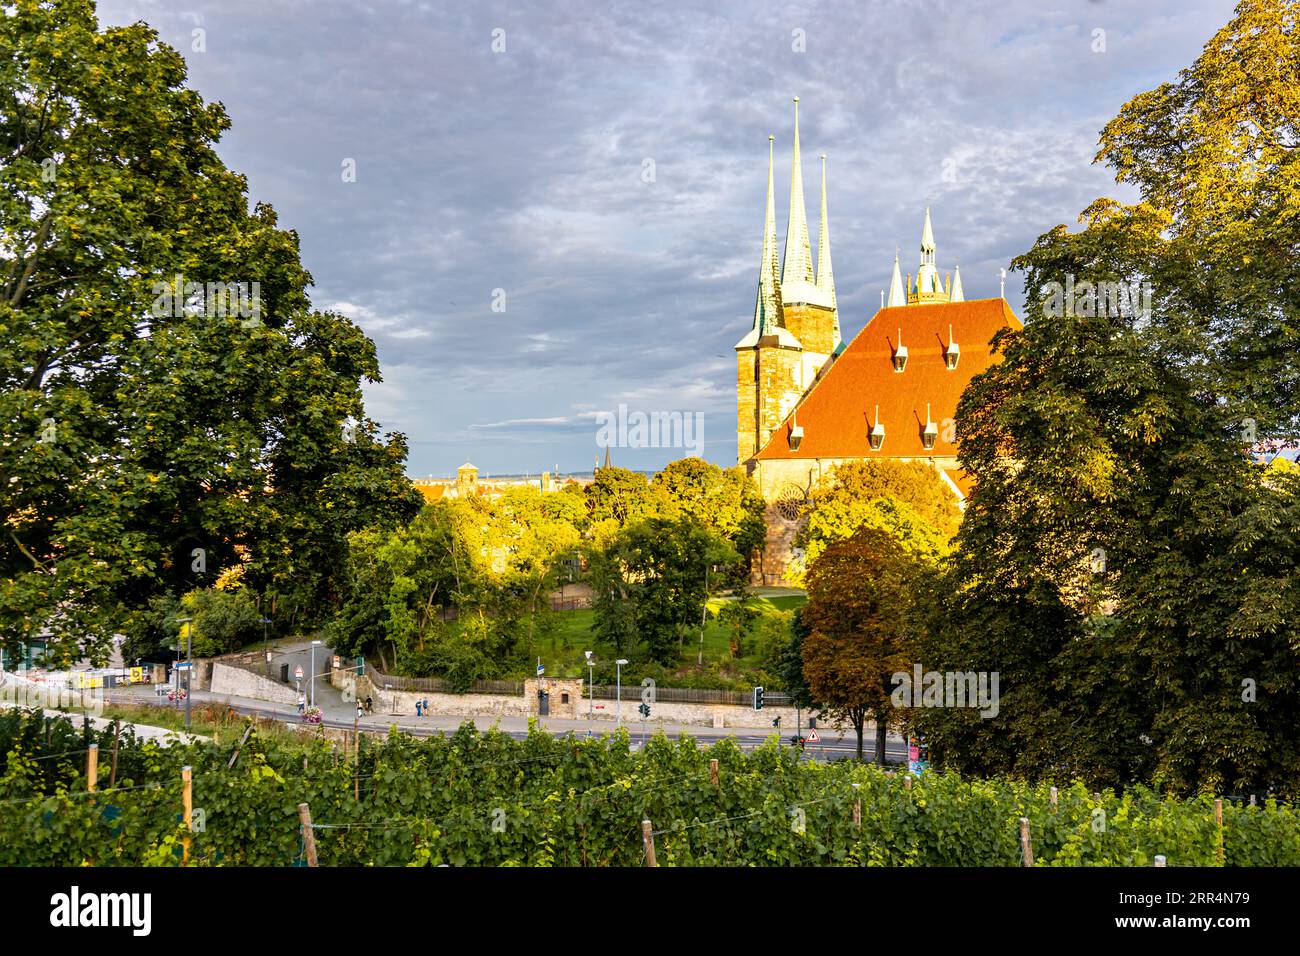 Paseo a finales de verano por la capital de Turingia - Erfurt - Alemania Foto de stock